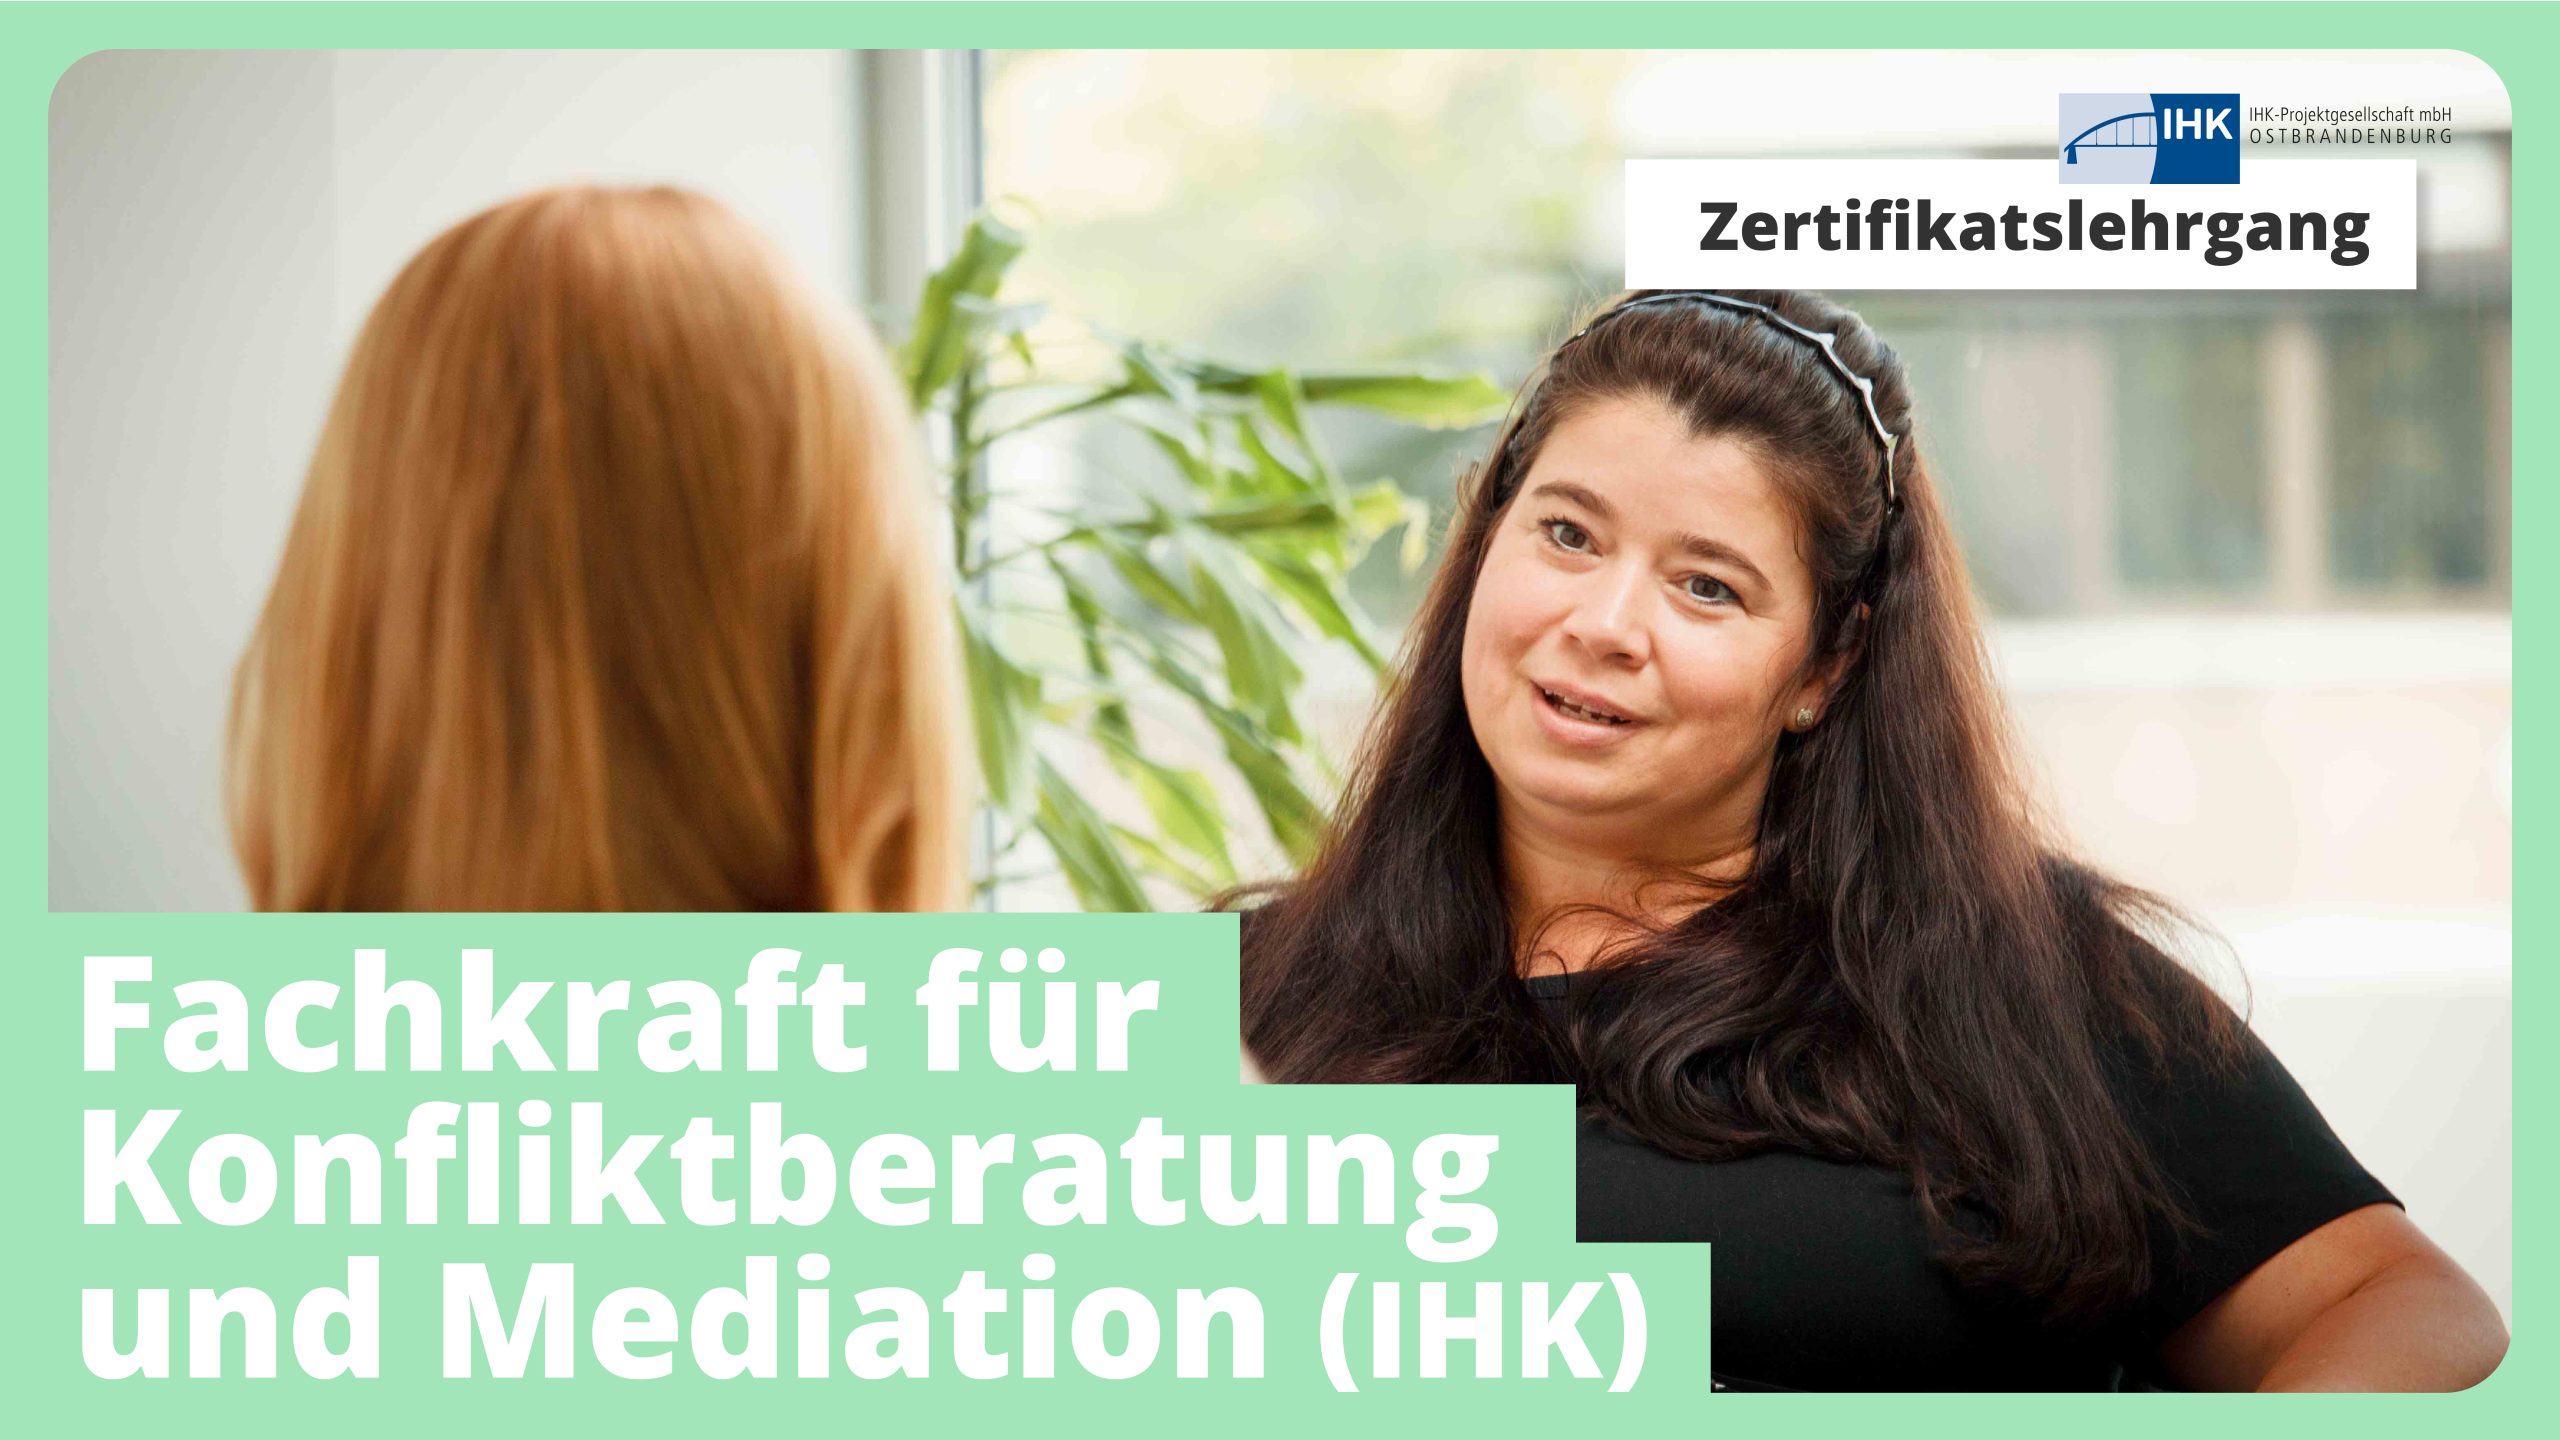 Zertifikatslehrgang: Fachkraft für Konfliktberatung und Mediation (IHK)